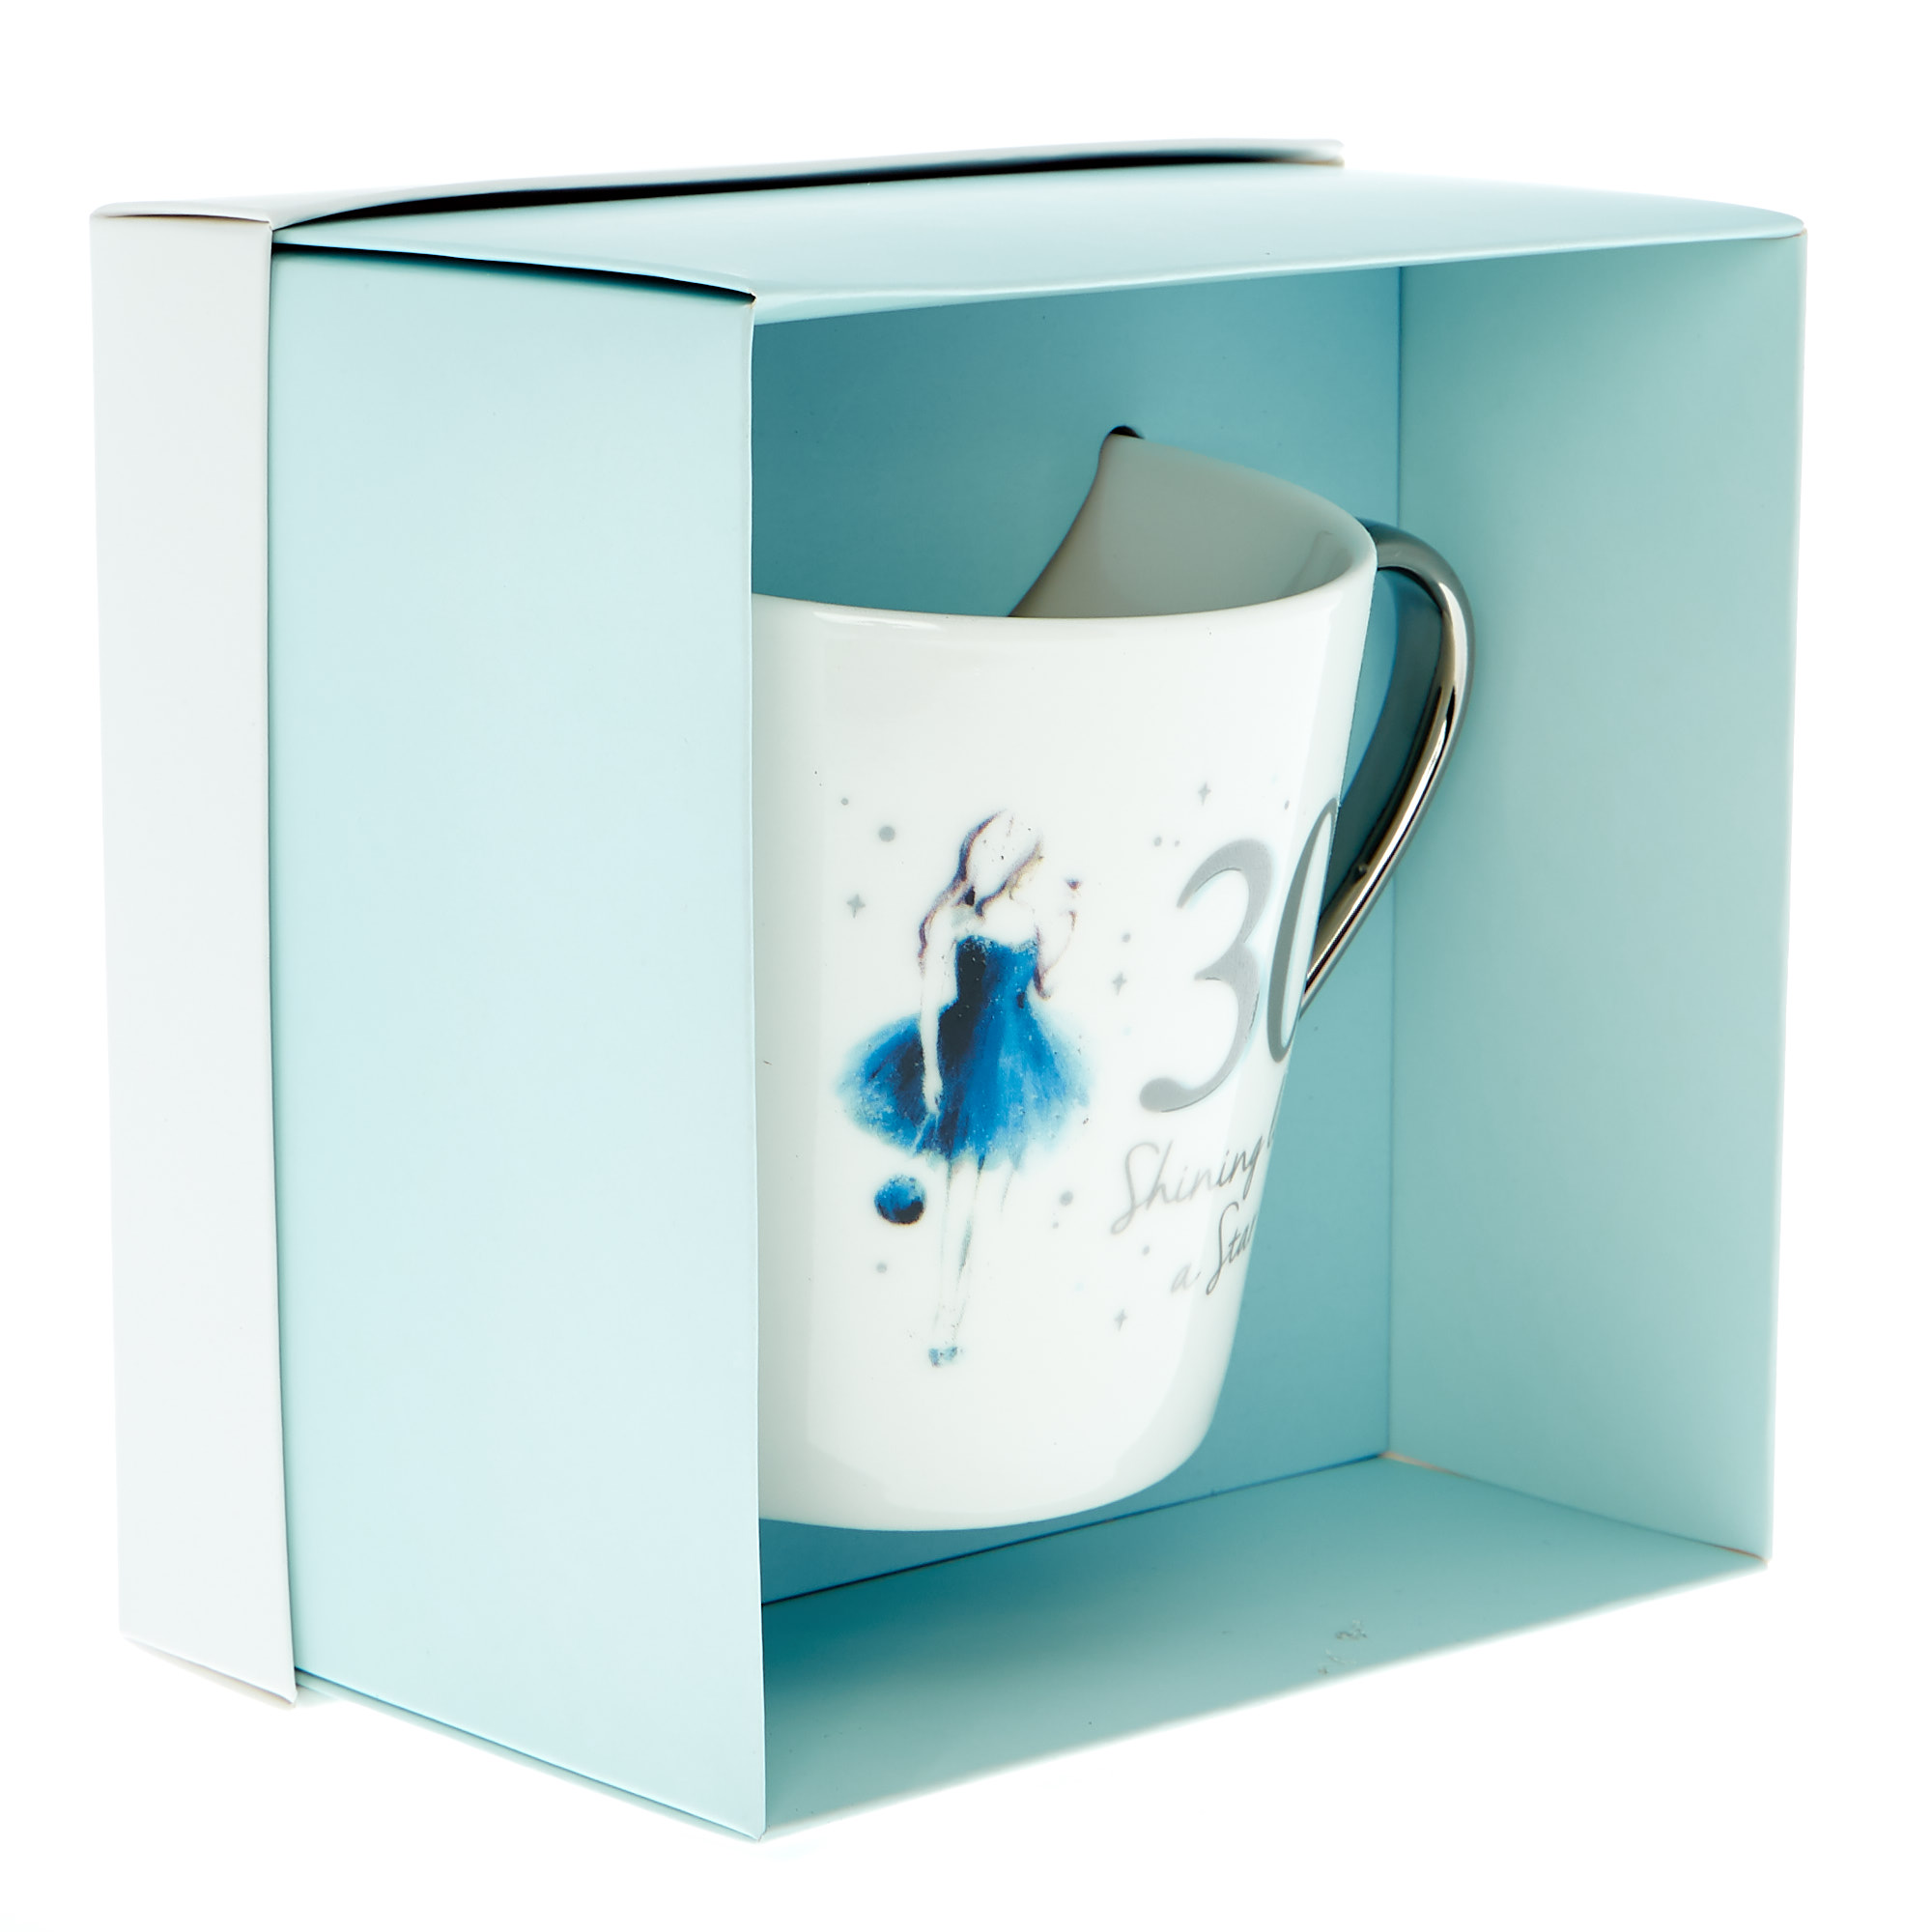 30th Birthday Mug In A Box - Shining Like A Star